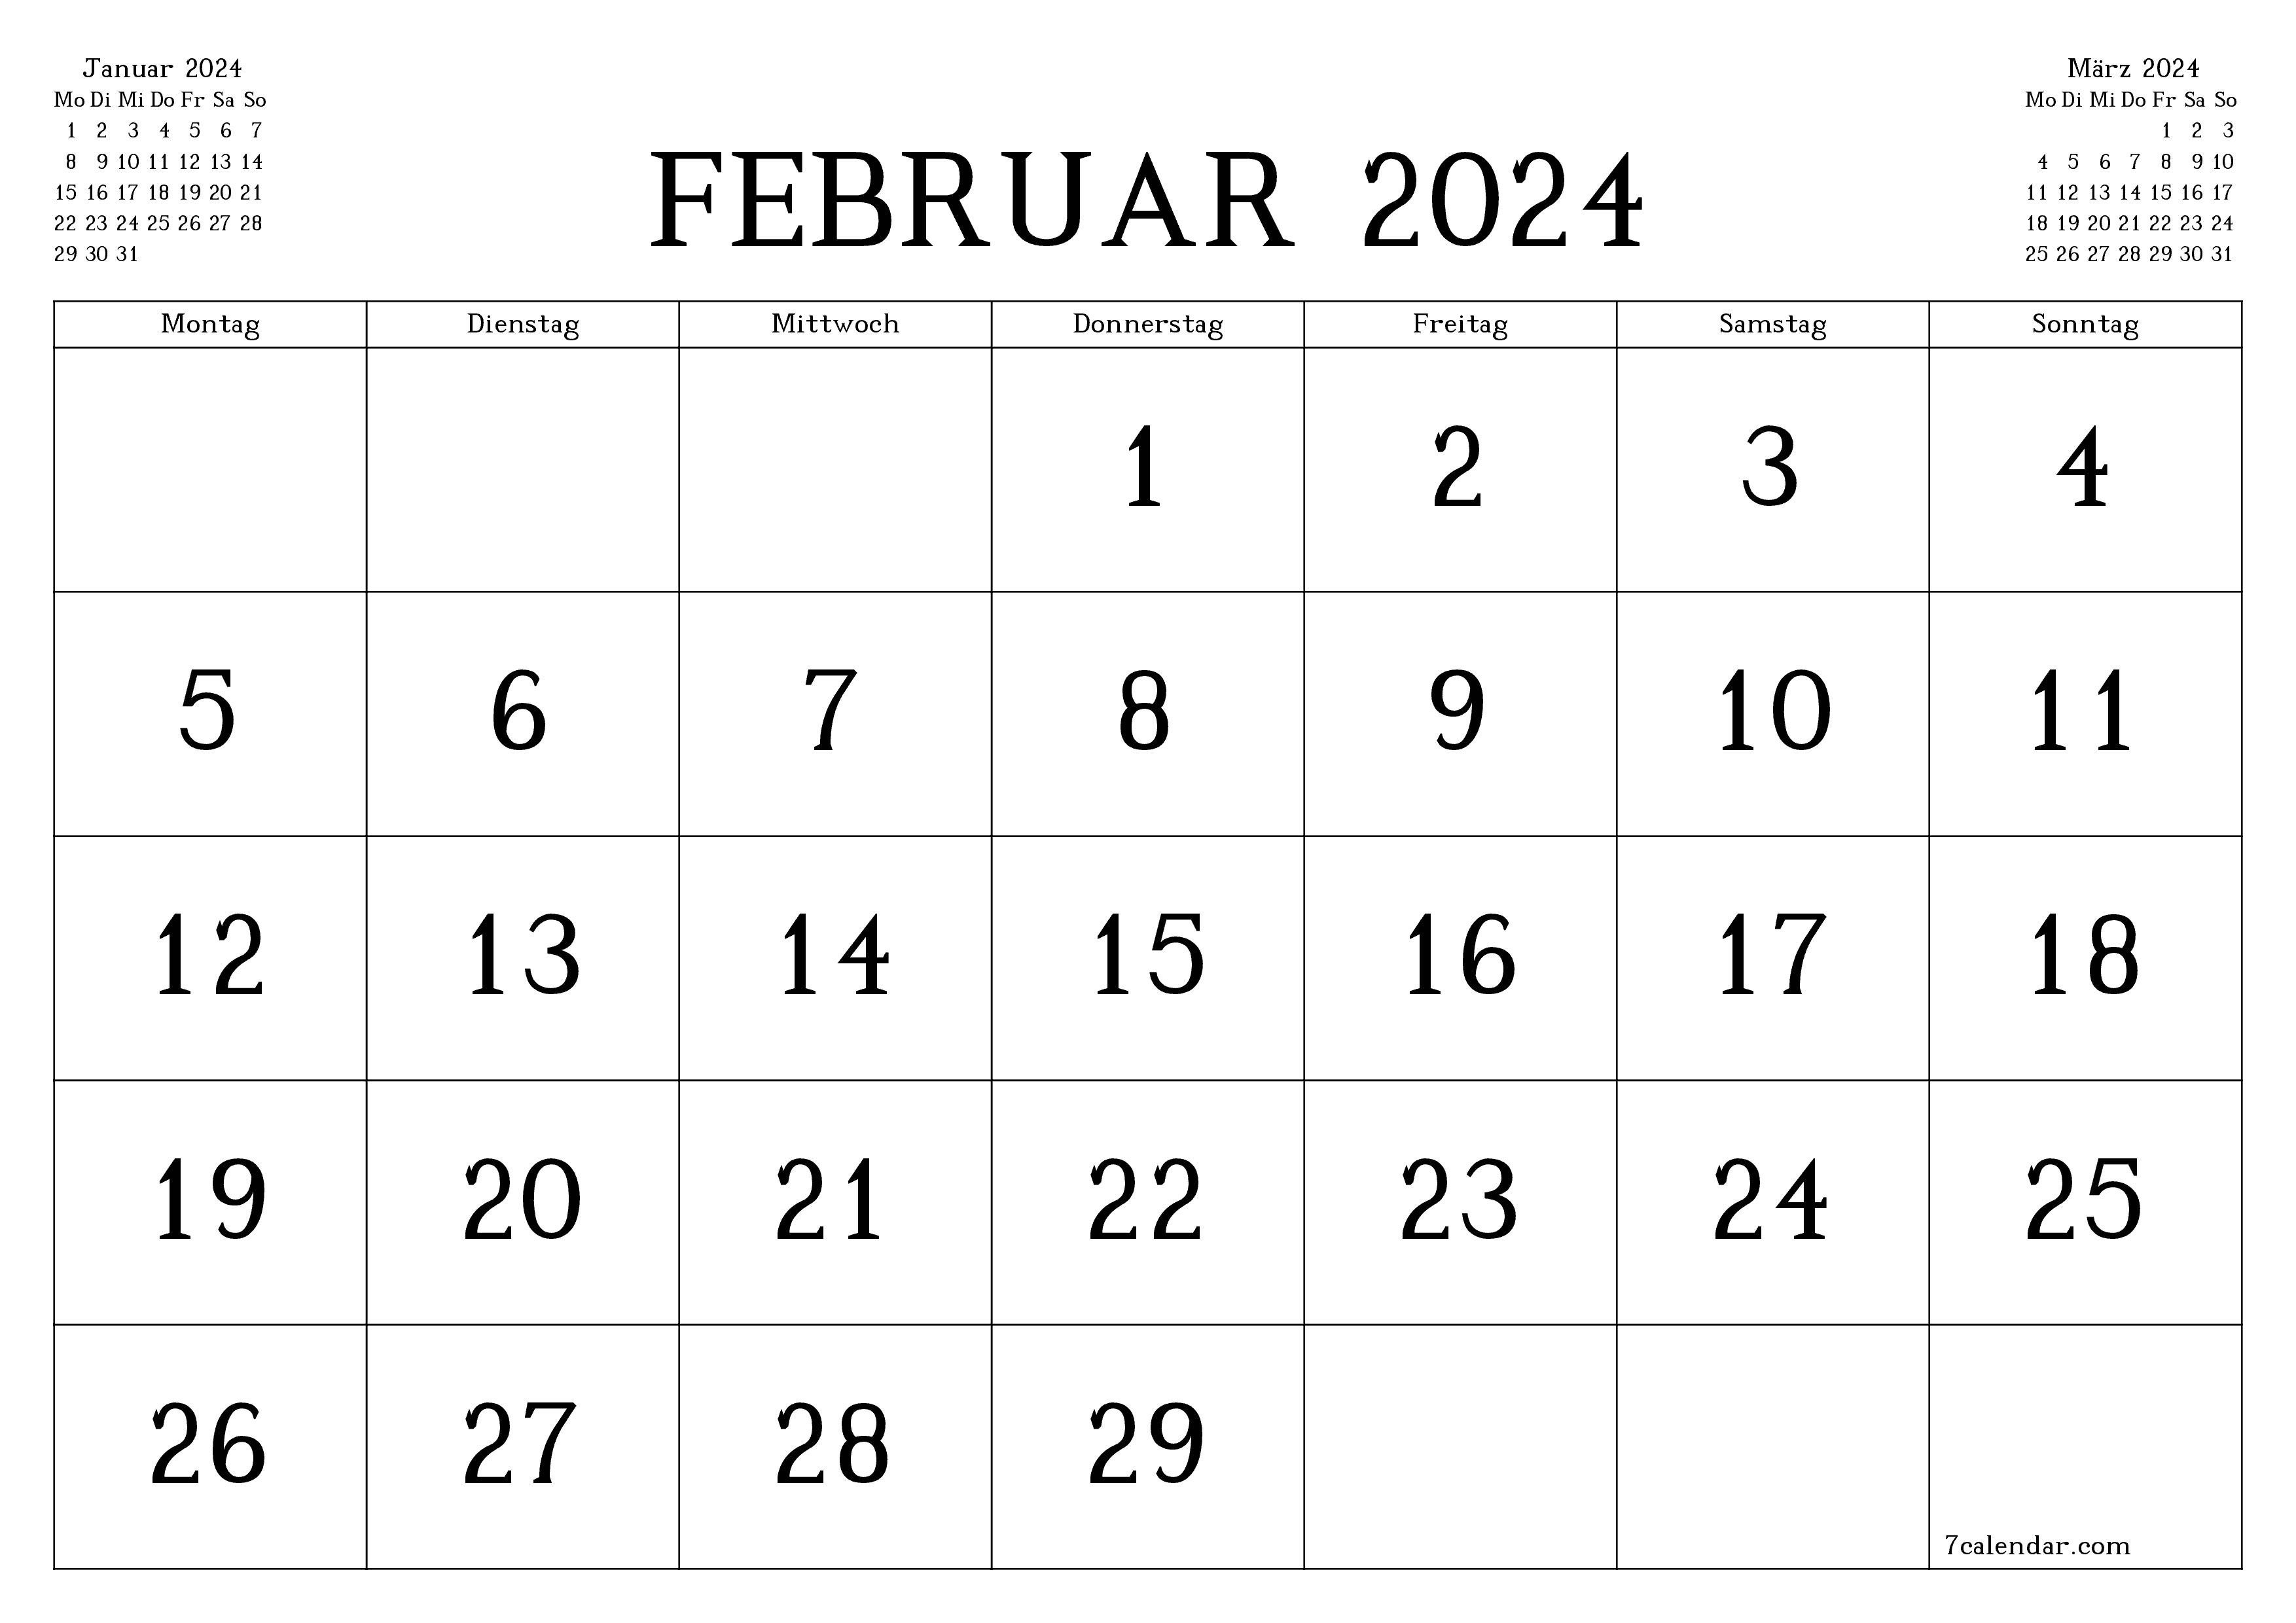 Monatsplaner für Monat Februar 2024 mit Notizen leeren, speichern und als PDF PNG German - 7calendar.com drucken